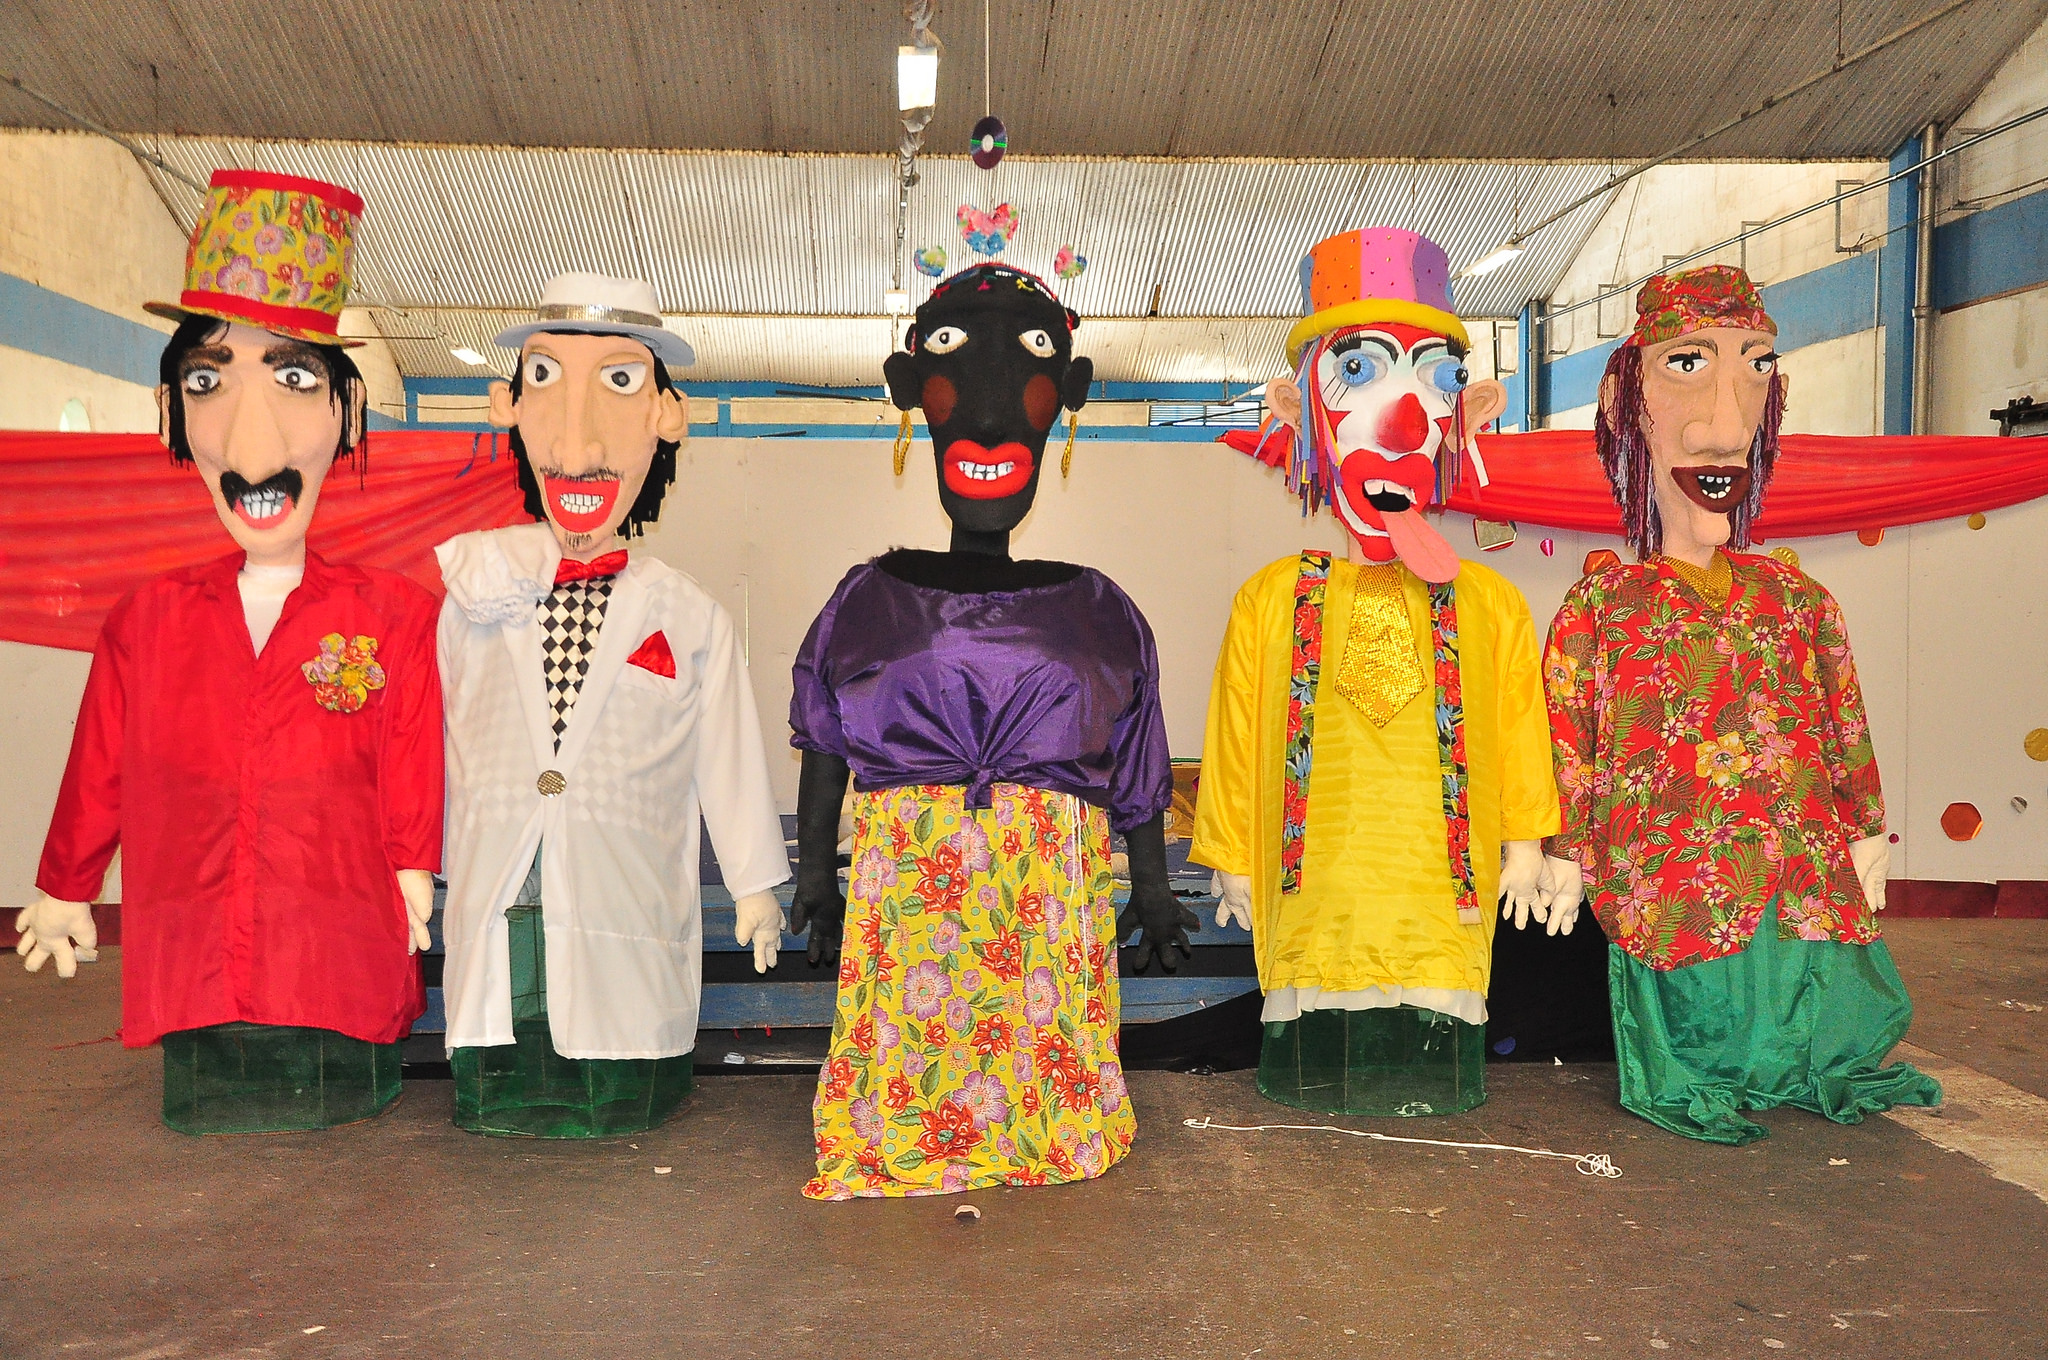 Bonecos gigantes animam o Carnaval em Bertioga